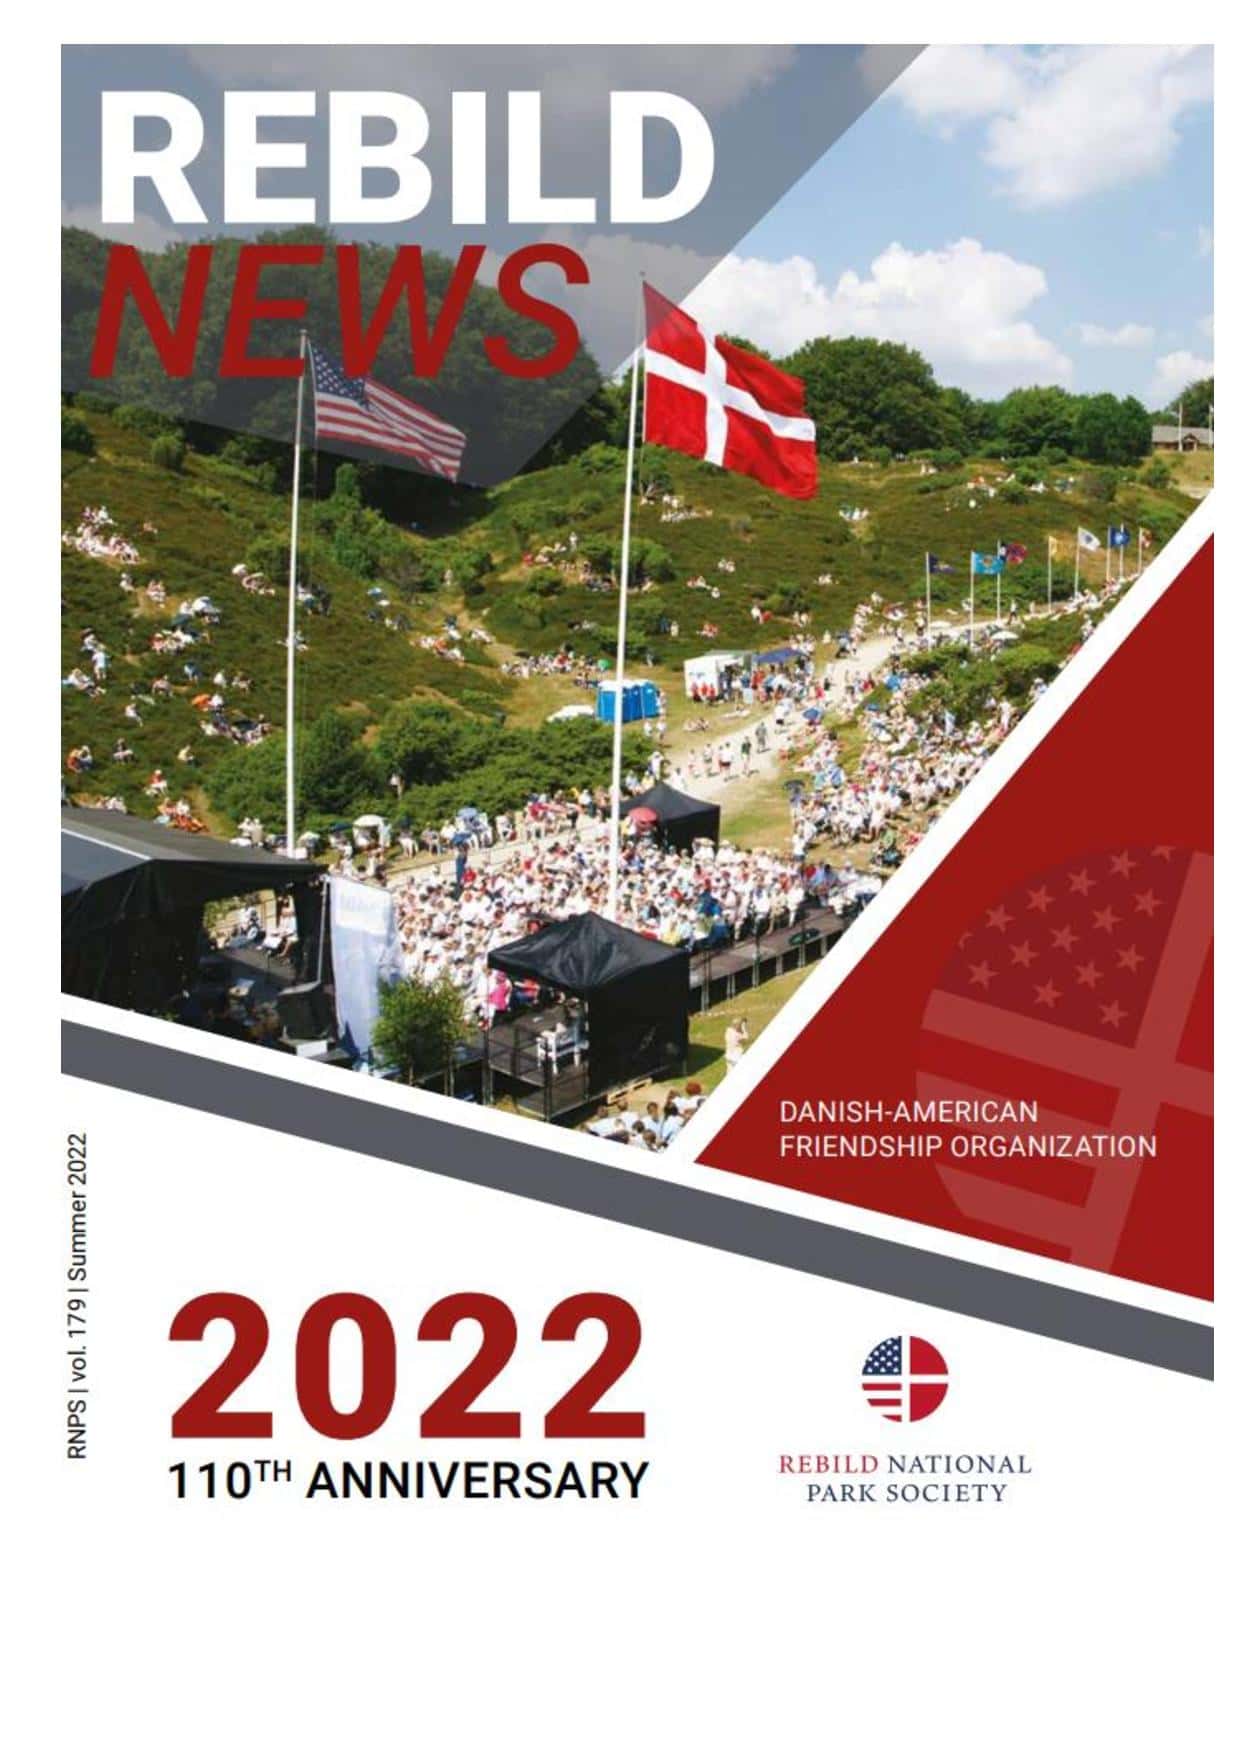 RebildNews Summer 2022